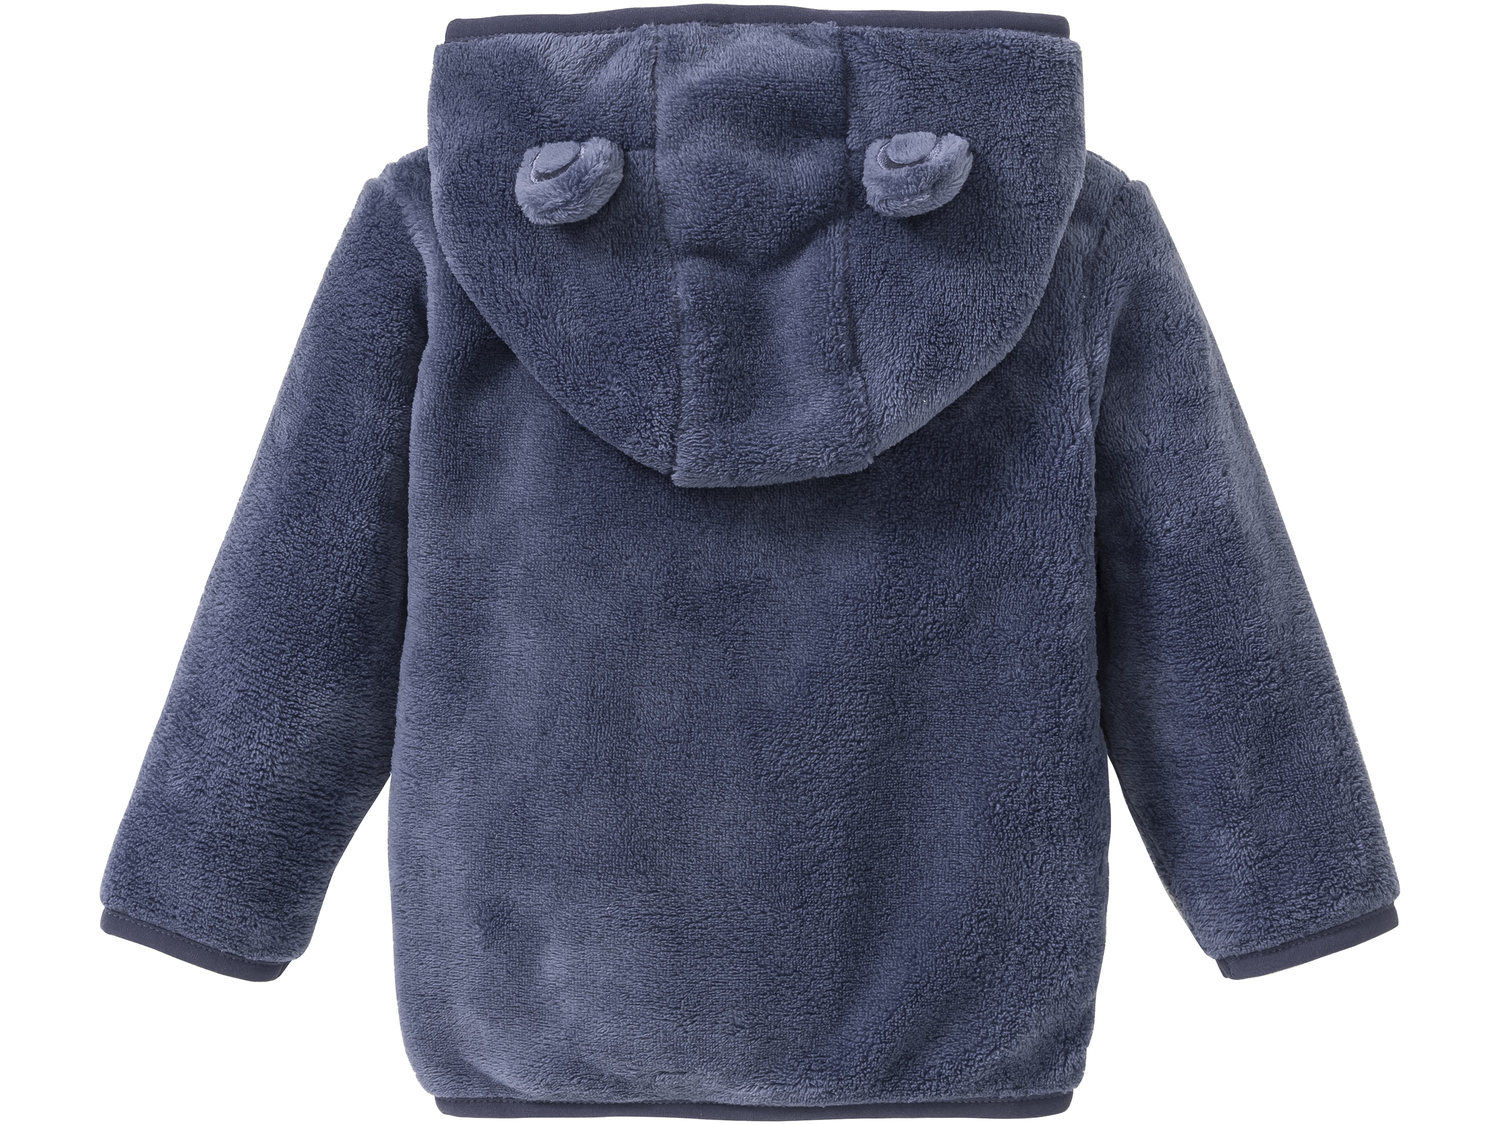 Bluza polarowa Lupilu, cena 22,99 PLN 
Ubranka z kolekcji dla dzieci posiadają ...